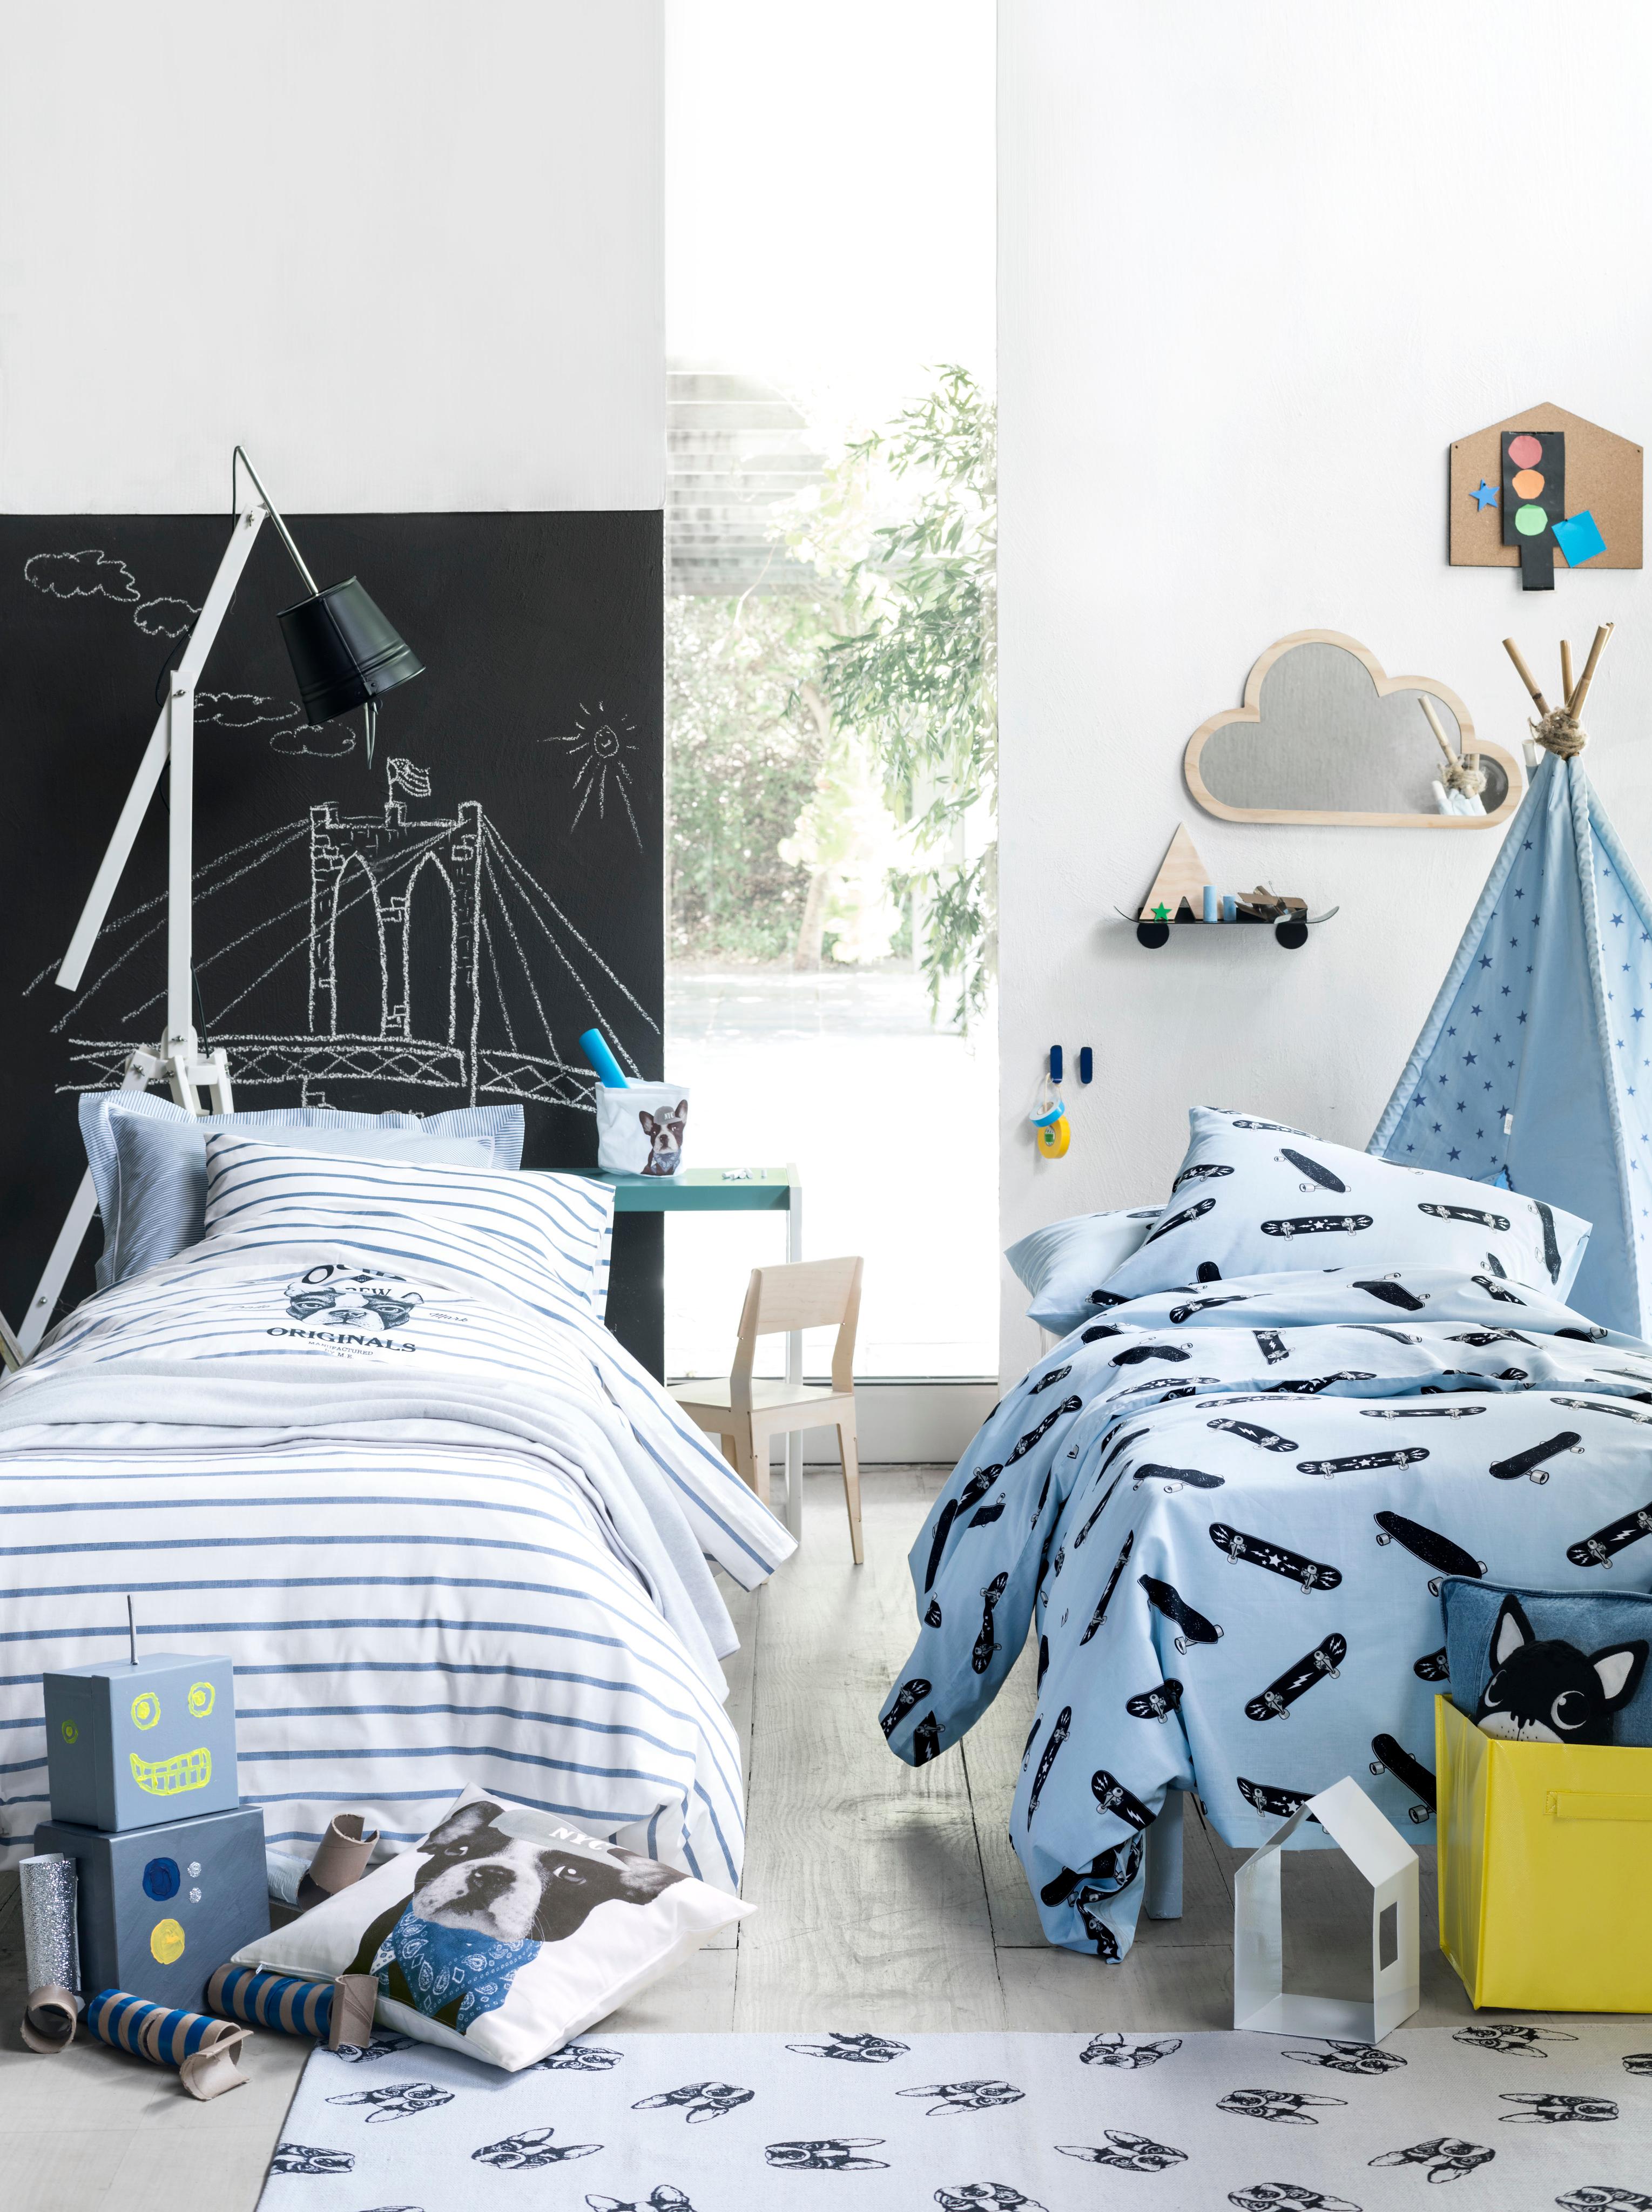 Kinderzimmer mit witzigen Details #stuhl #bett #teppich #spiegel #bettwäsche #stehlampe #kinderbett #lampe #tafellack ©H&M Home